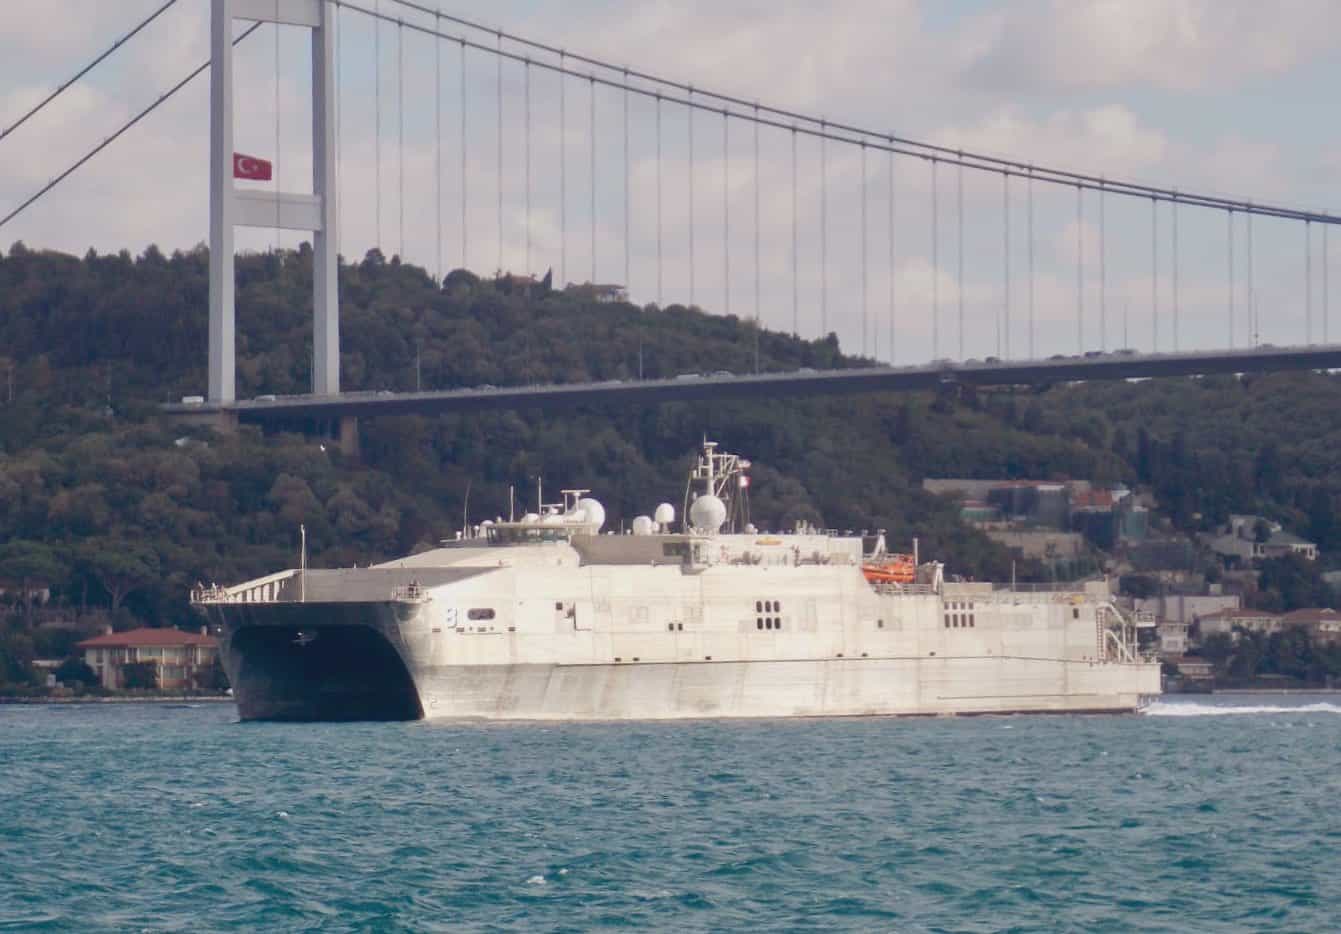 Десантне судно-катамаран Військово-морського флоту США USNS Yuma (“Юма”).